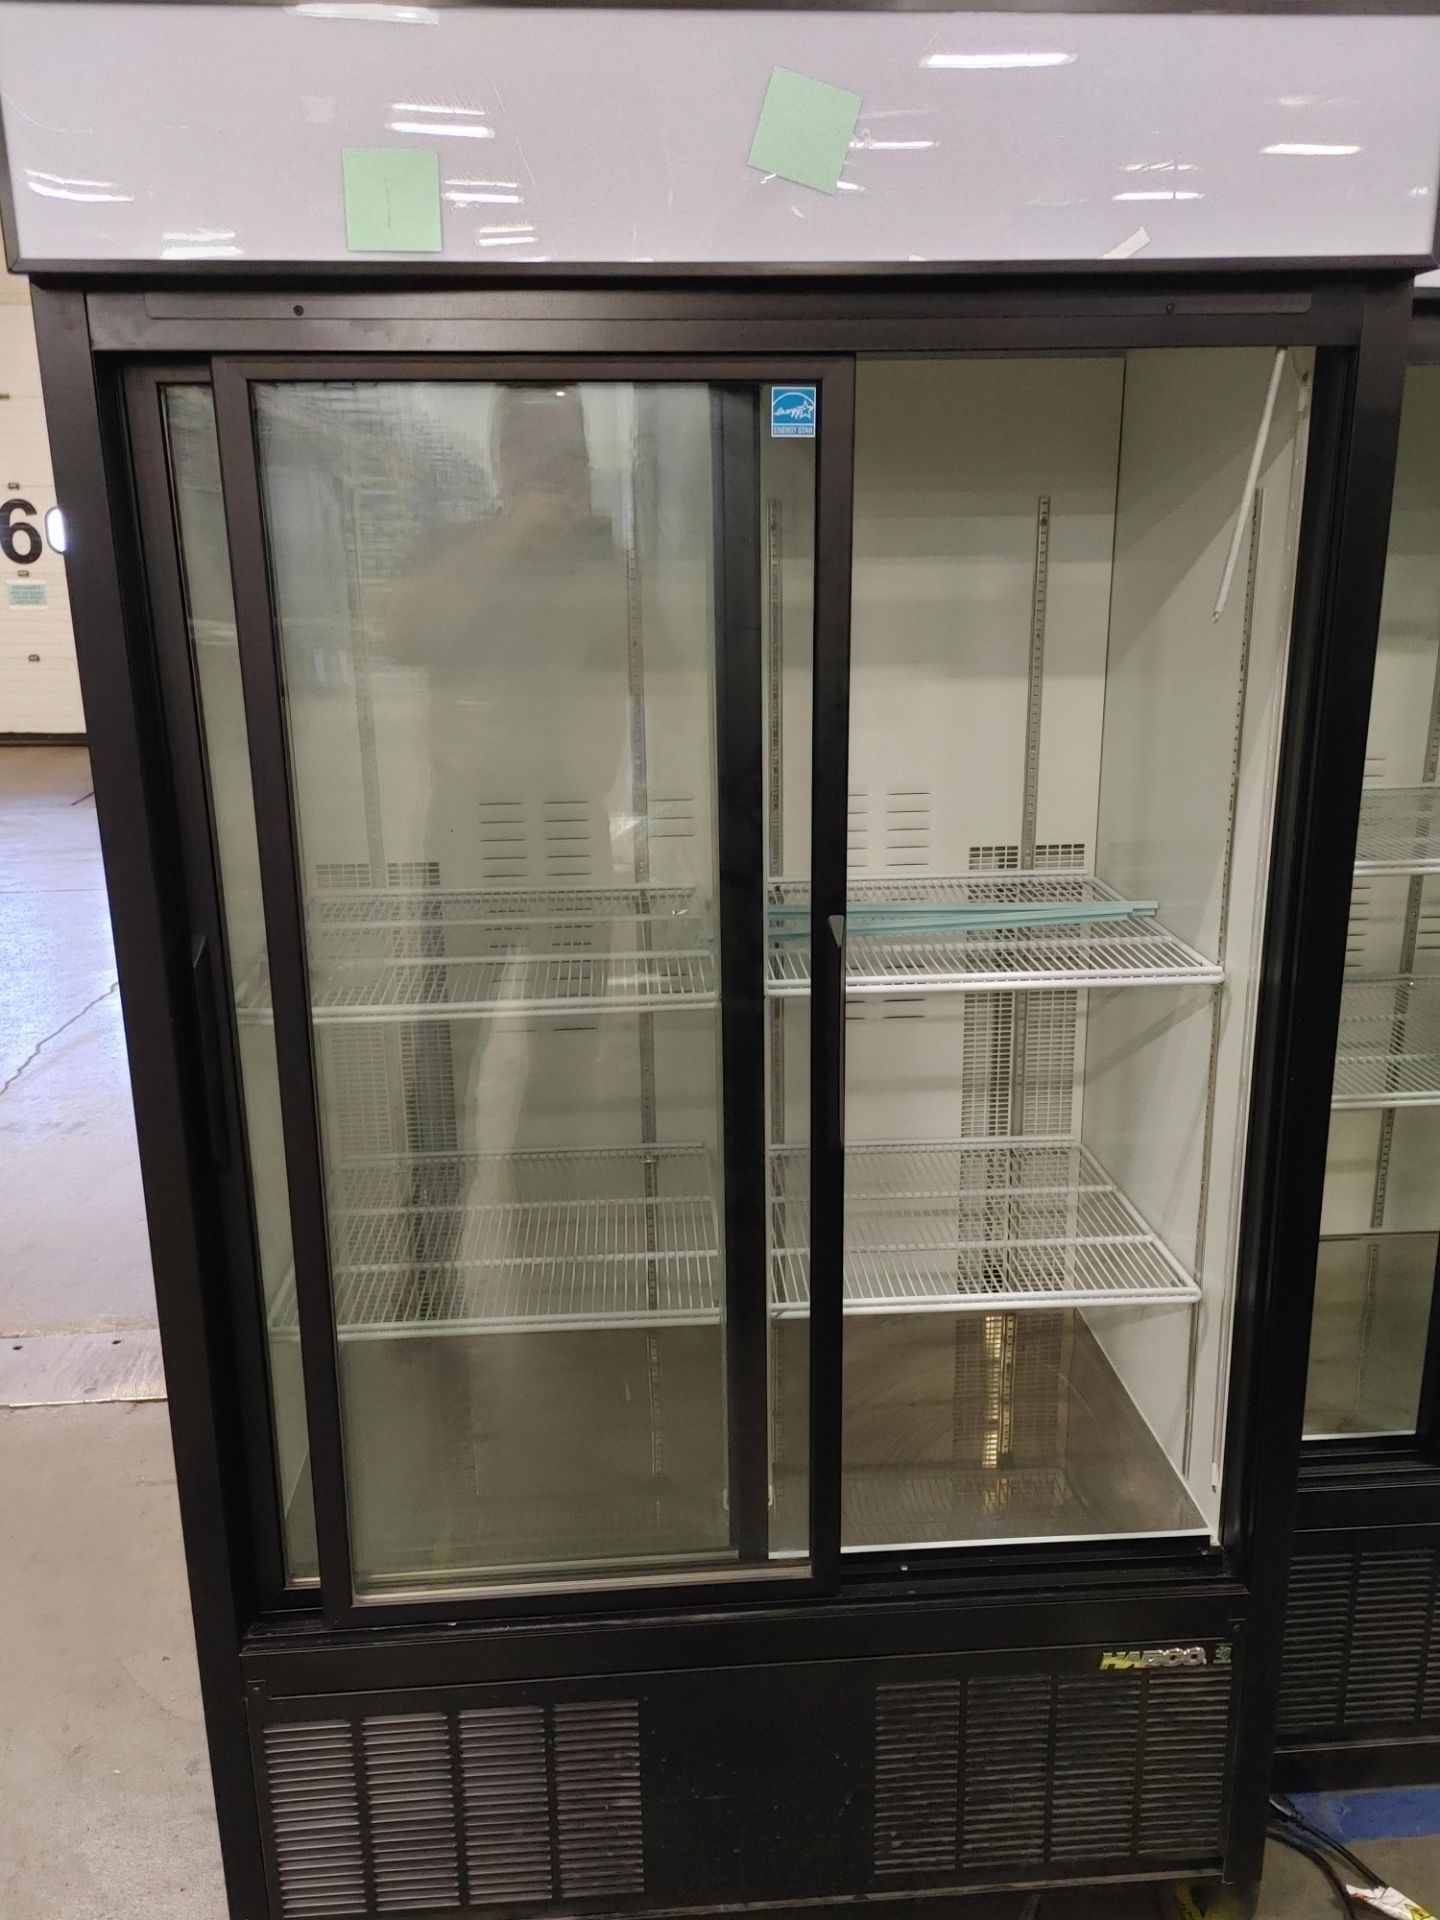 Habco "ESM42HC" 2 Door Refrigerator S/N 42066193